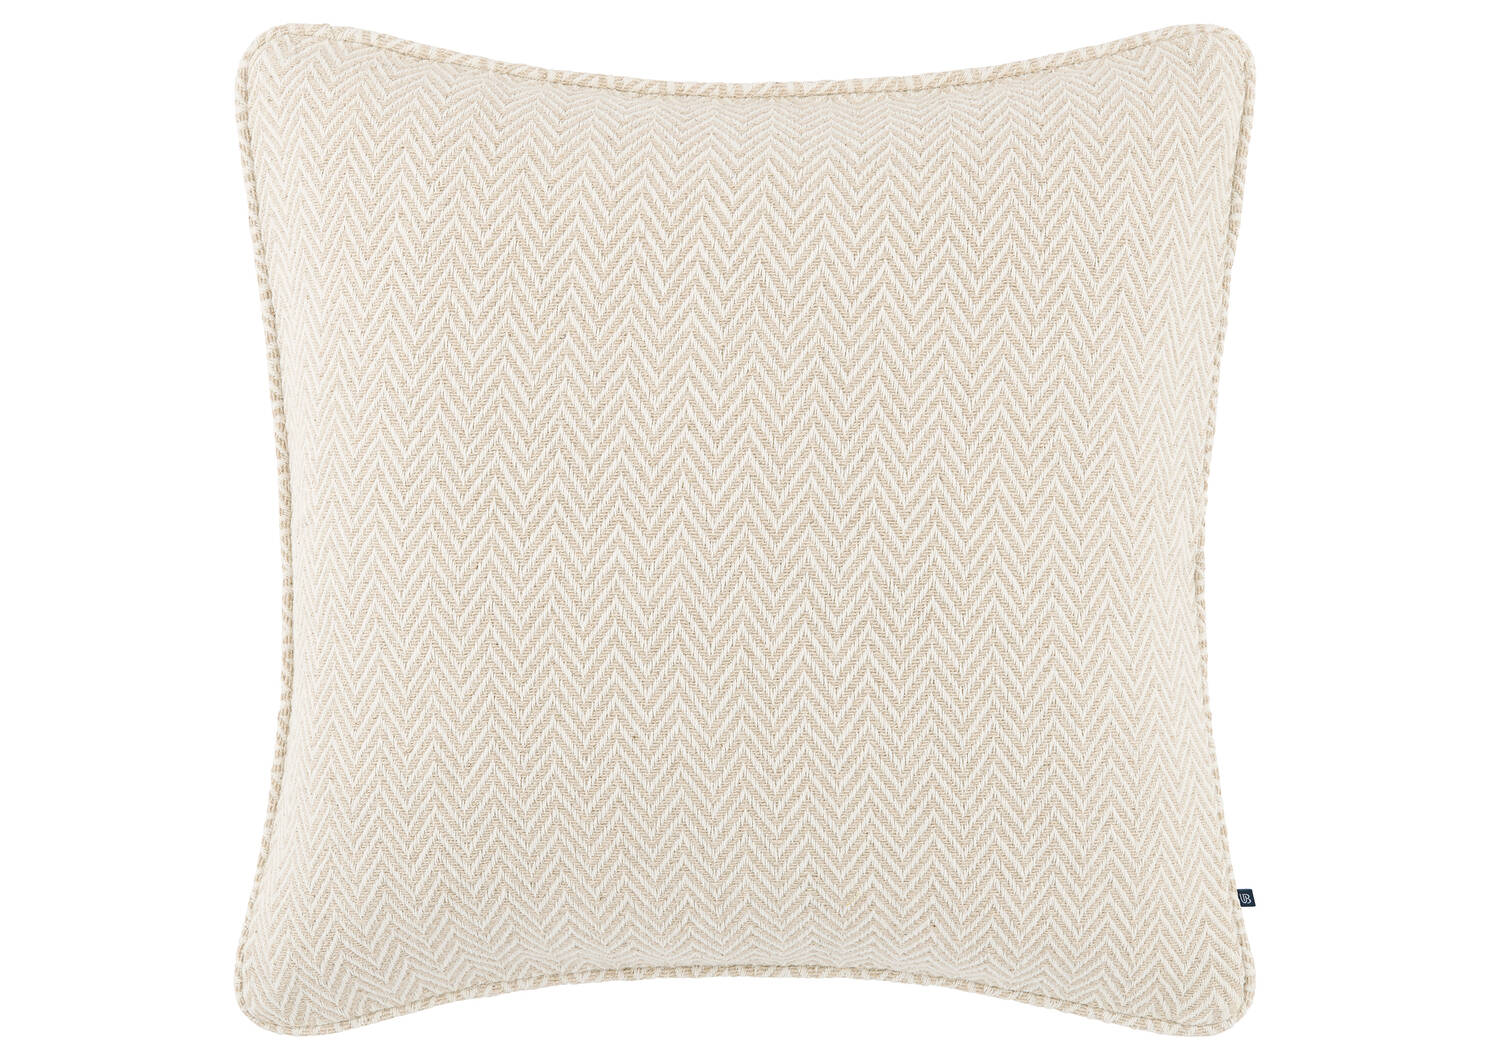 Elston Cotton Pillow 20x20 Sand/Ivory